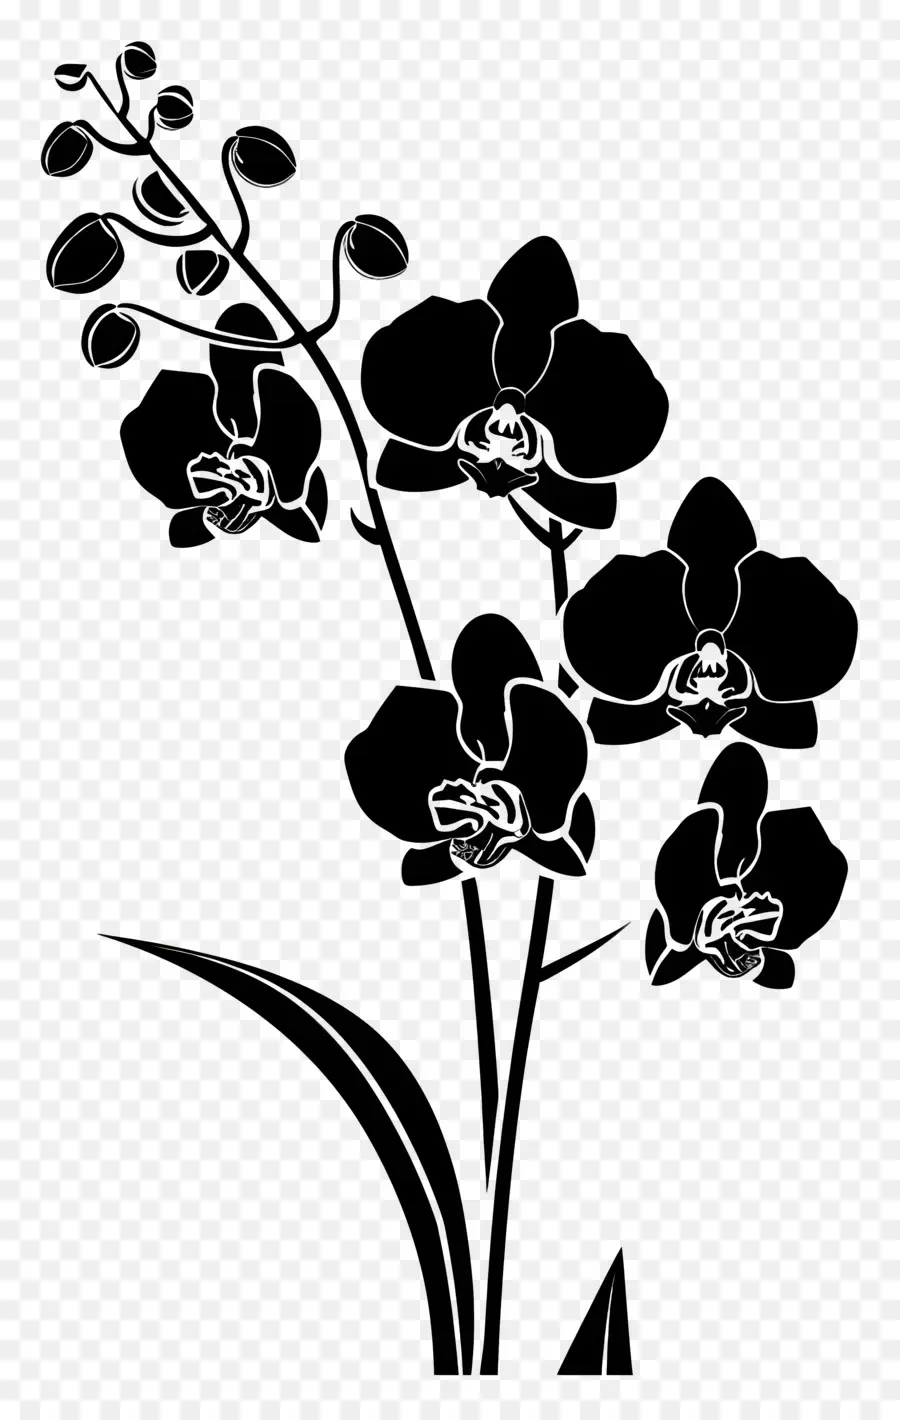 Blumen Silhouette dunkle Raum Blumen Wassertropfen weiße Blumen - Dunkler Raum mit weißen Blumen und Wassertropfen